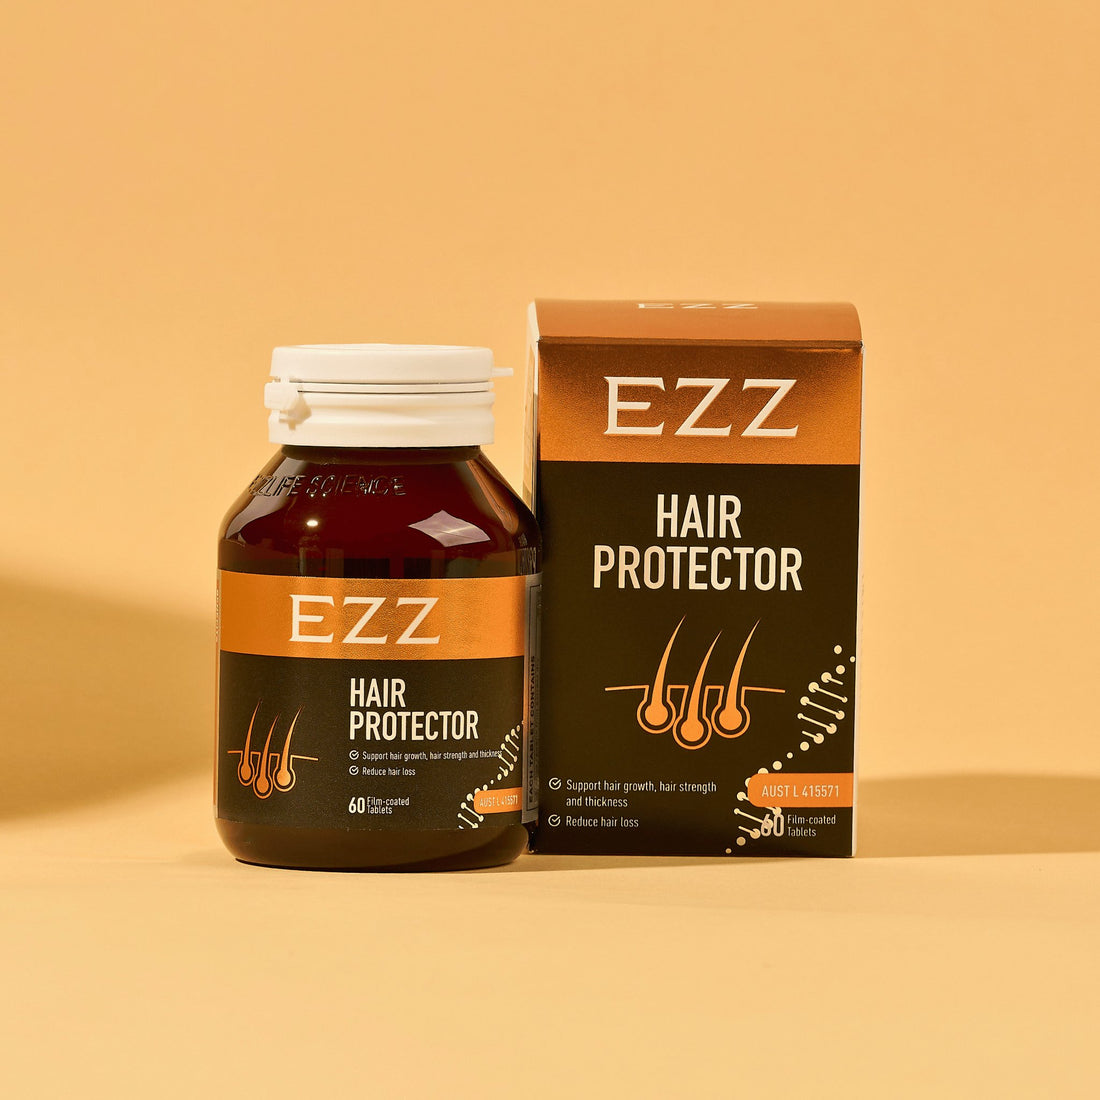 EZZ Hair Protector - EZZ OFFICIAL